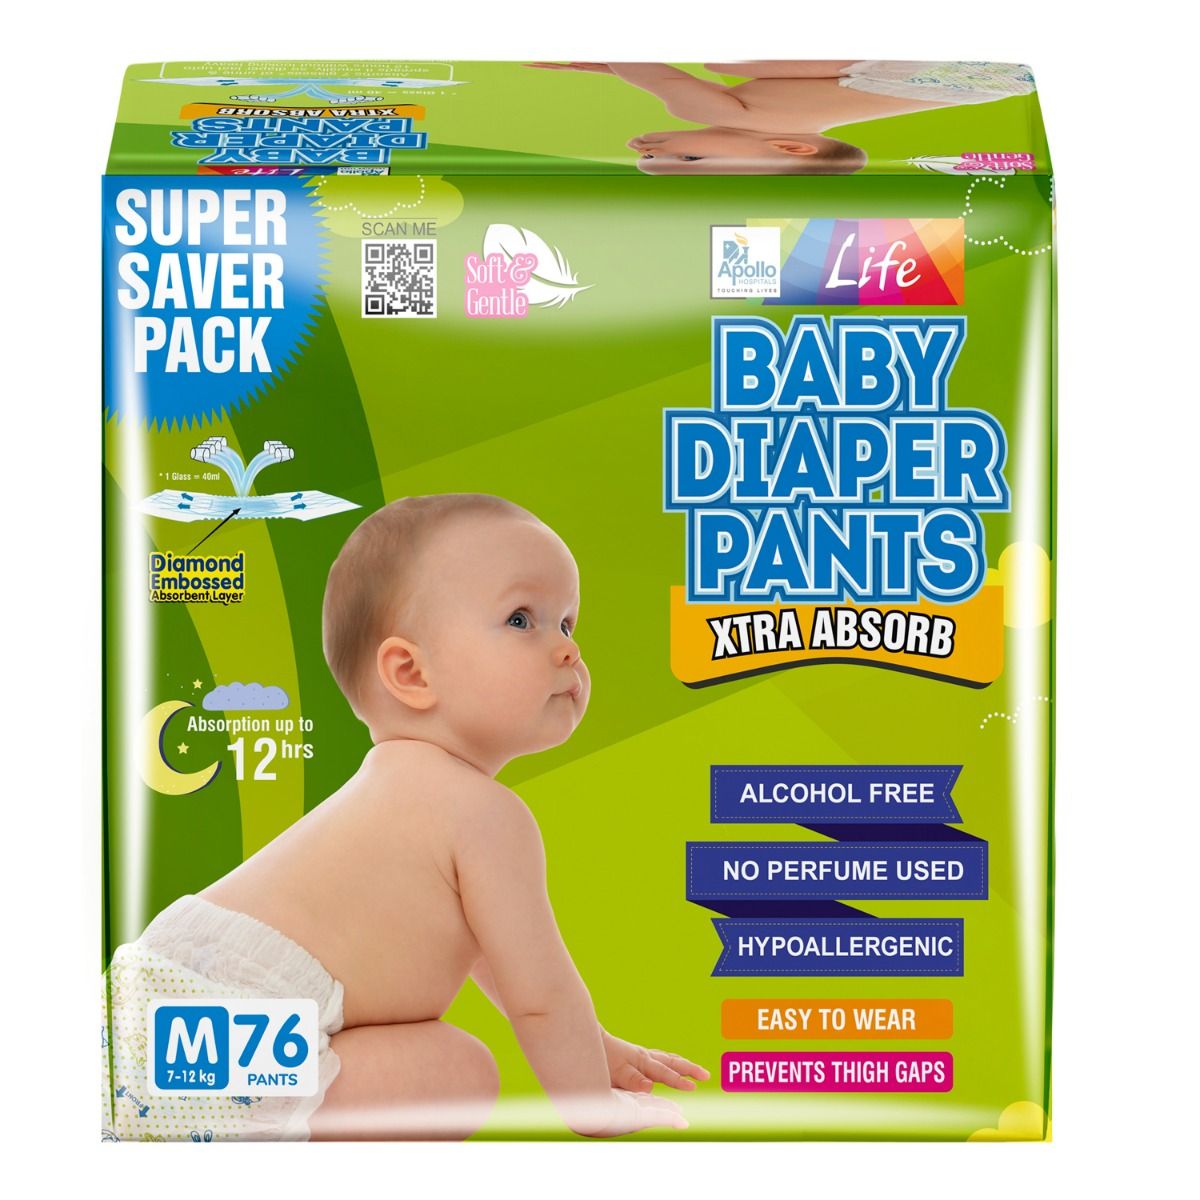 snuggy PREMIUM Baby Diaper Pants Medium  M  Buy 74 snuggy Pant Diapers   Flipkartcom